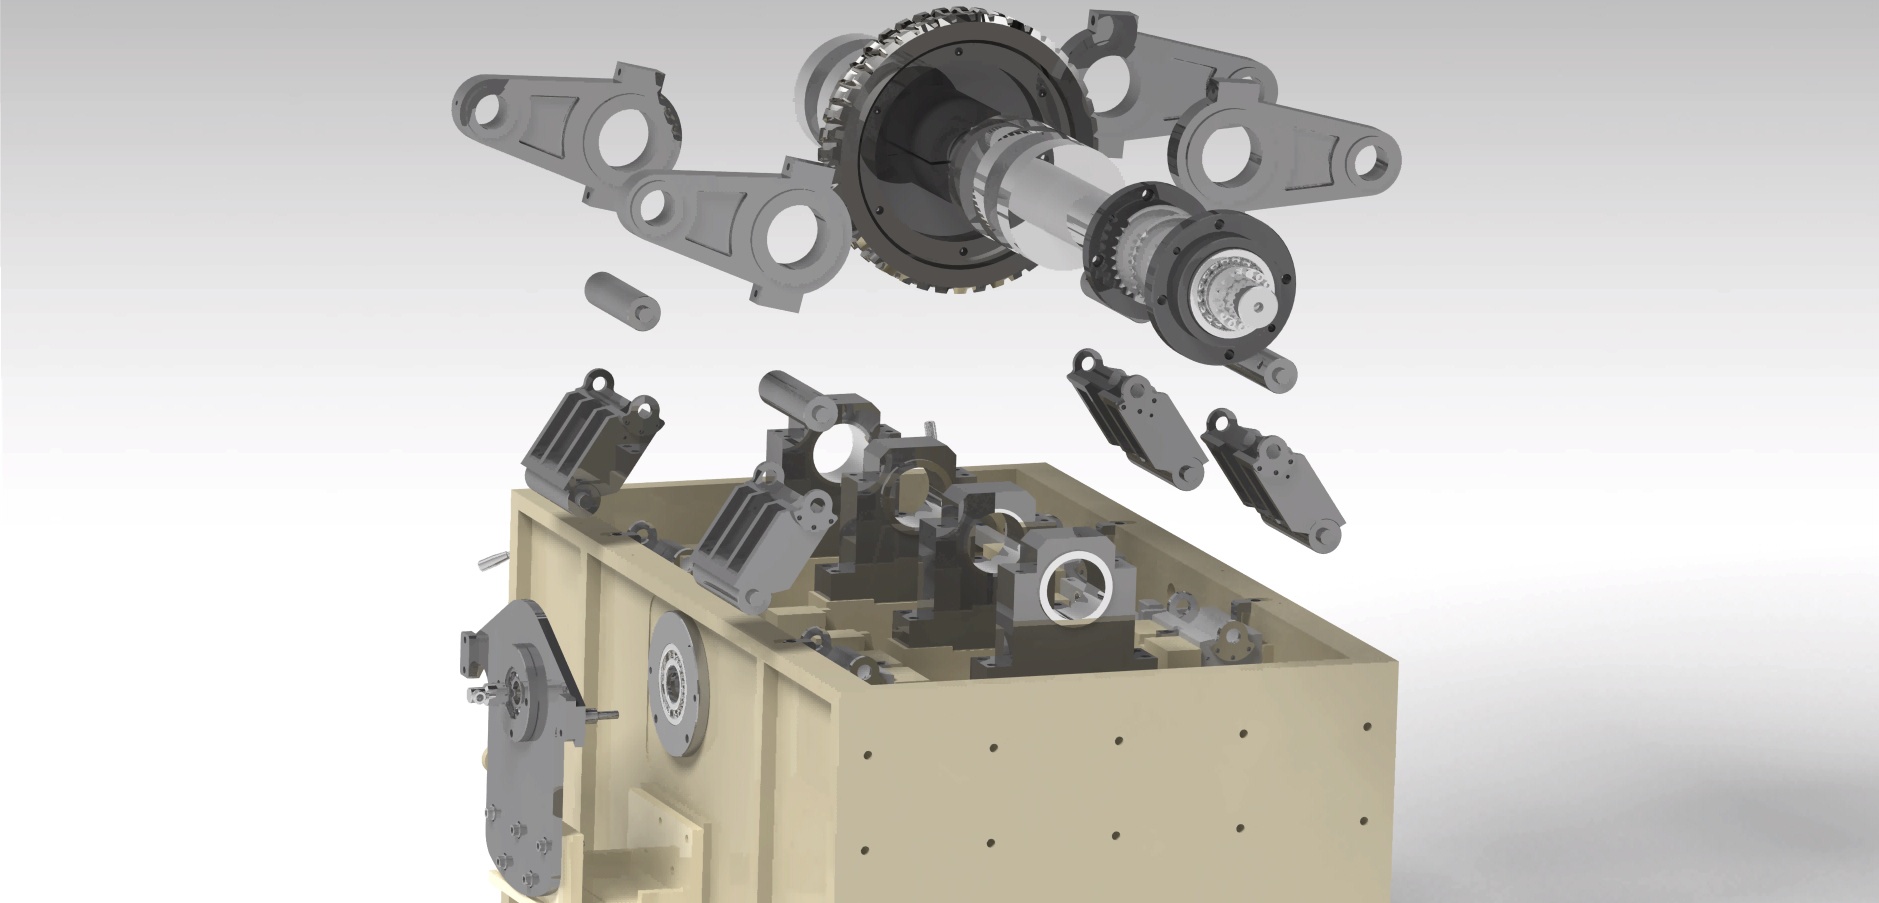 Box cutter machine assembly